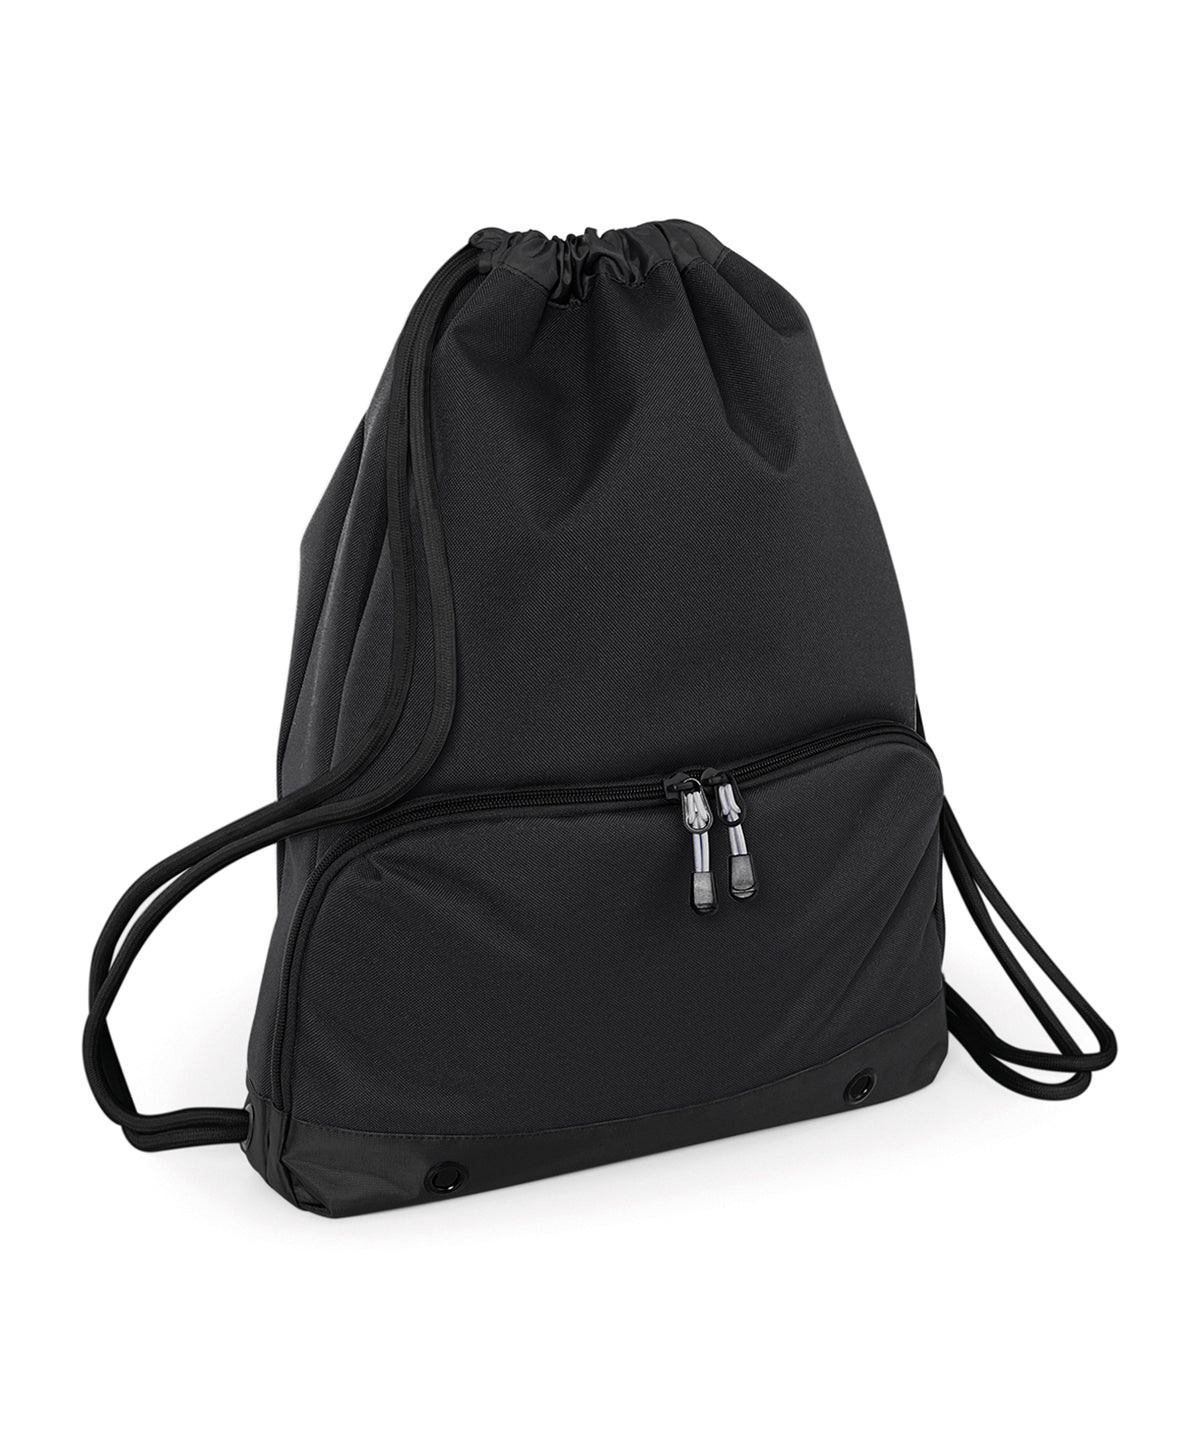 Personalised Bags - Black Bagbase Athleisure gymsac